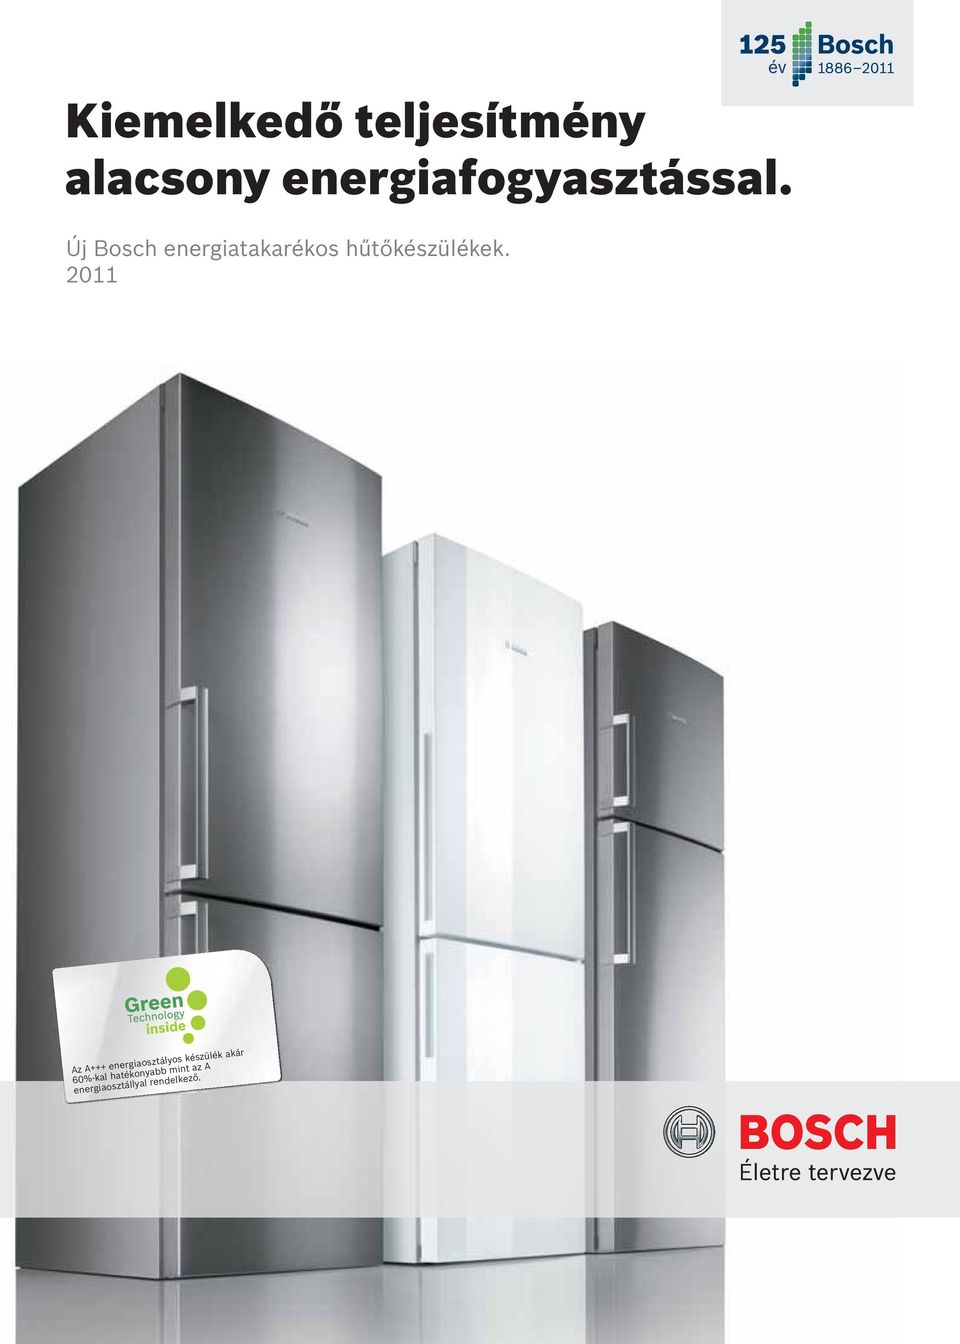 Bosch energiatakarékos hűtőkészülékek.